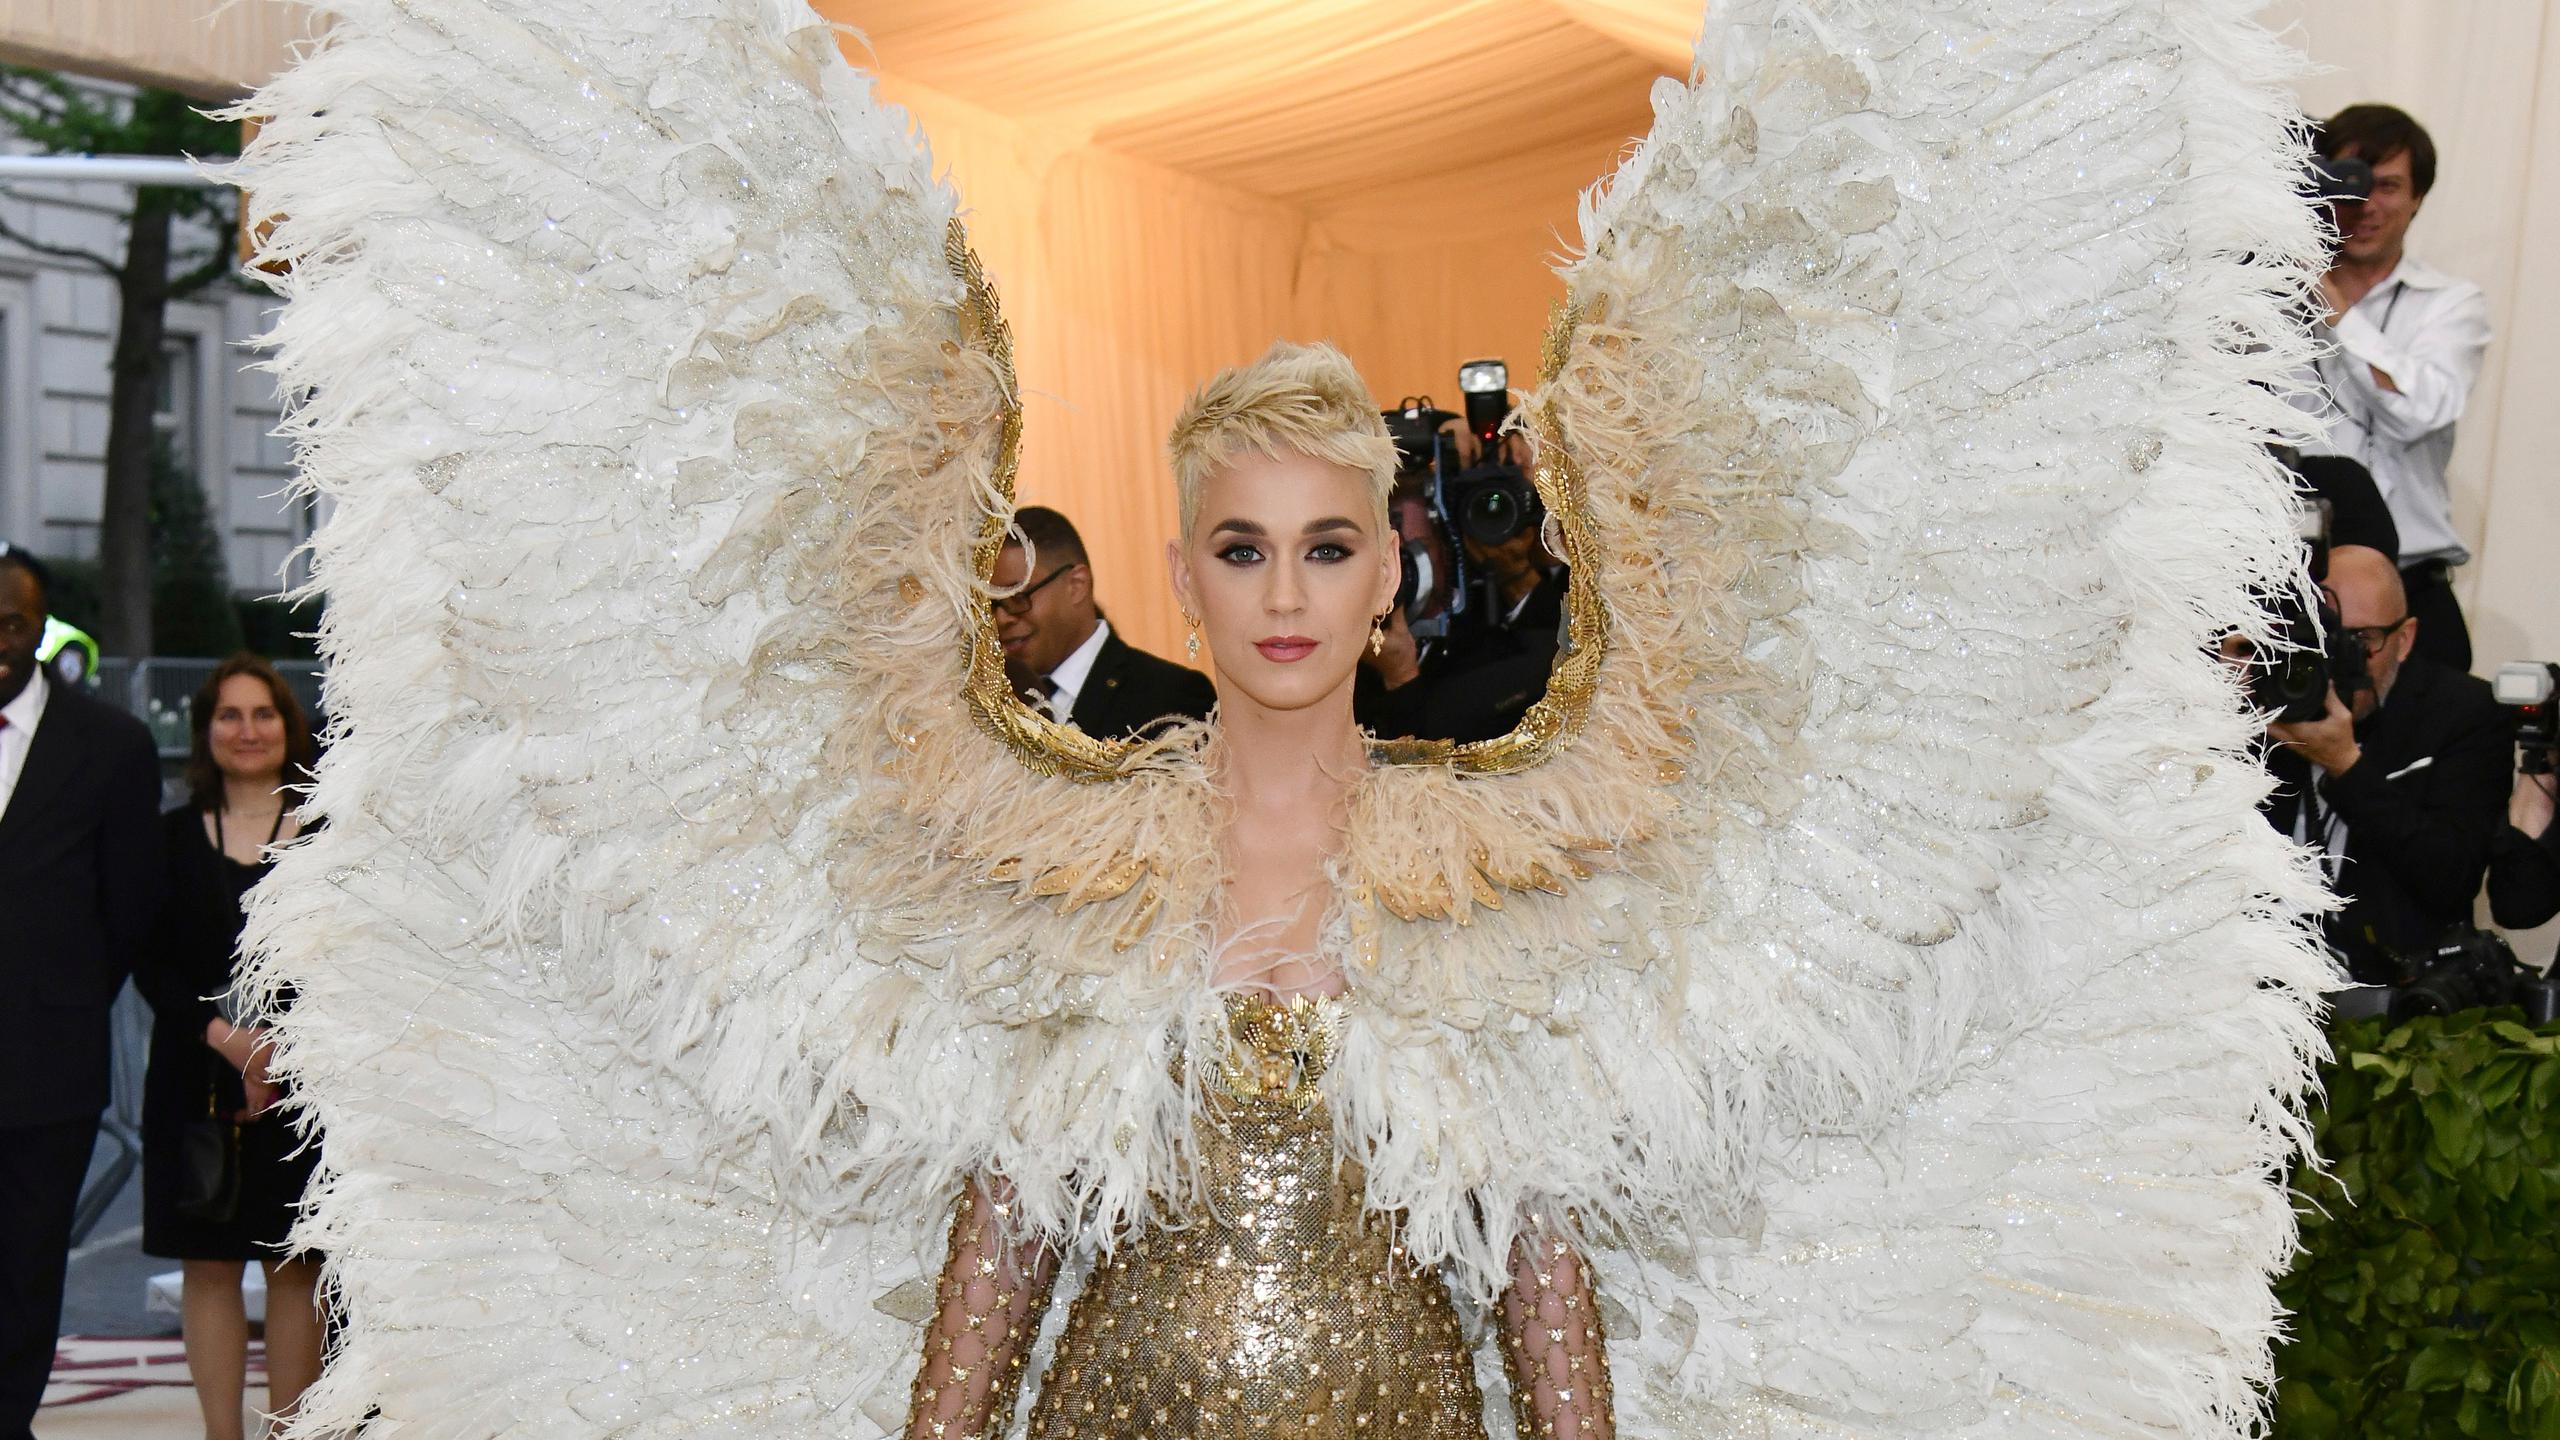 Katy Perry llega a la gala benéfica del Instituto del Vestuario del Museo de Arte Metropolitano, en celebración de la exhibición "Heavenly Bodies: Fashion and the Catholic Imagination"